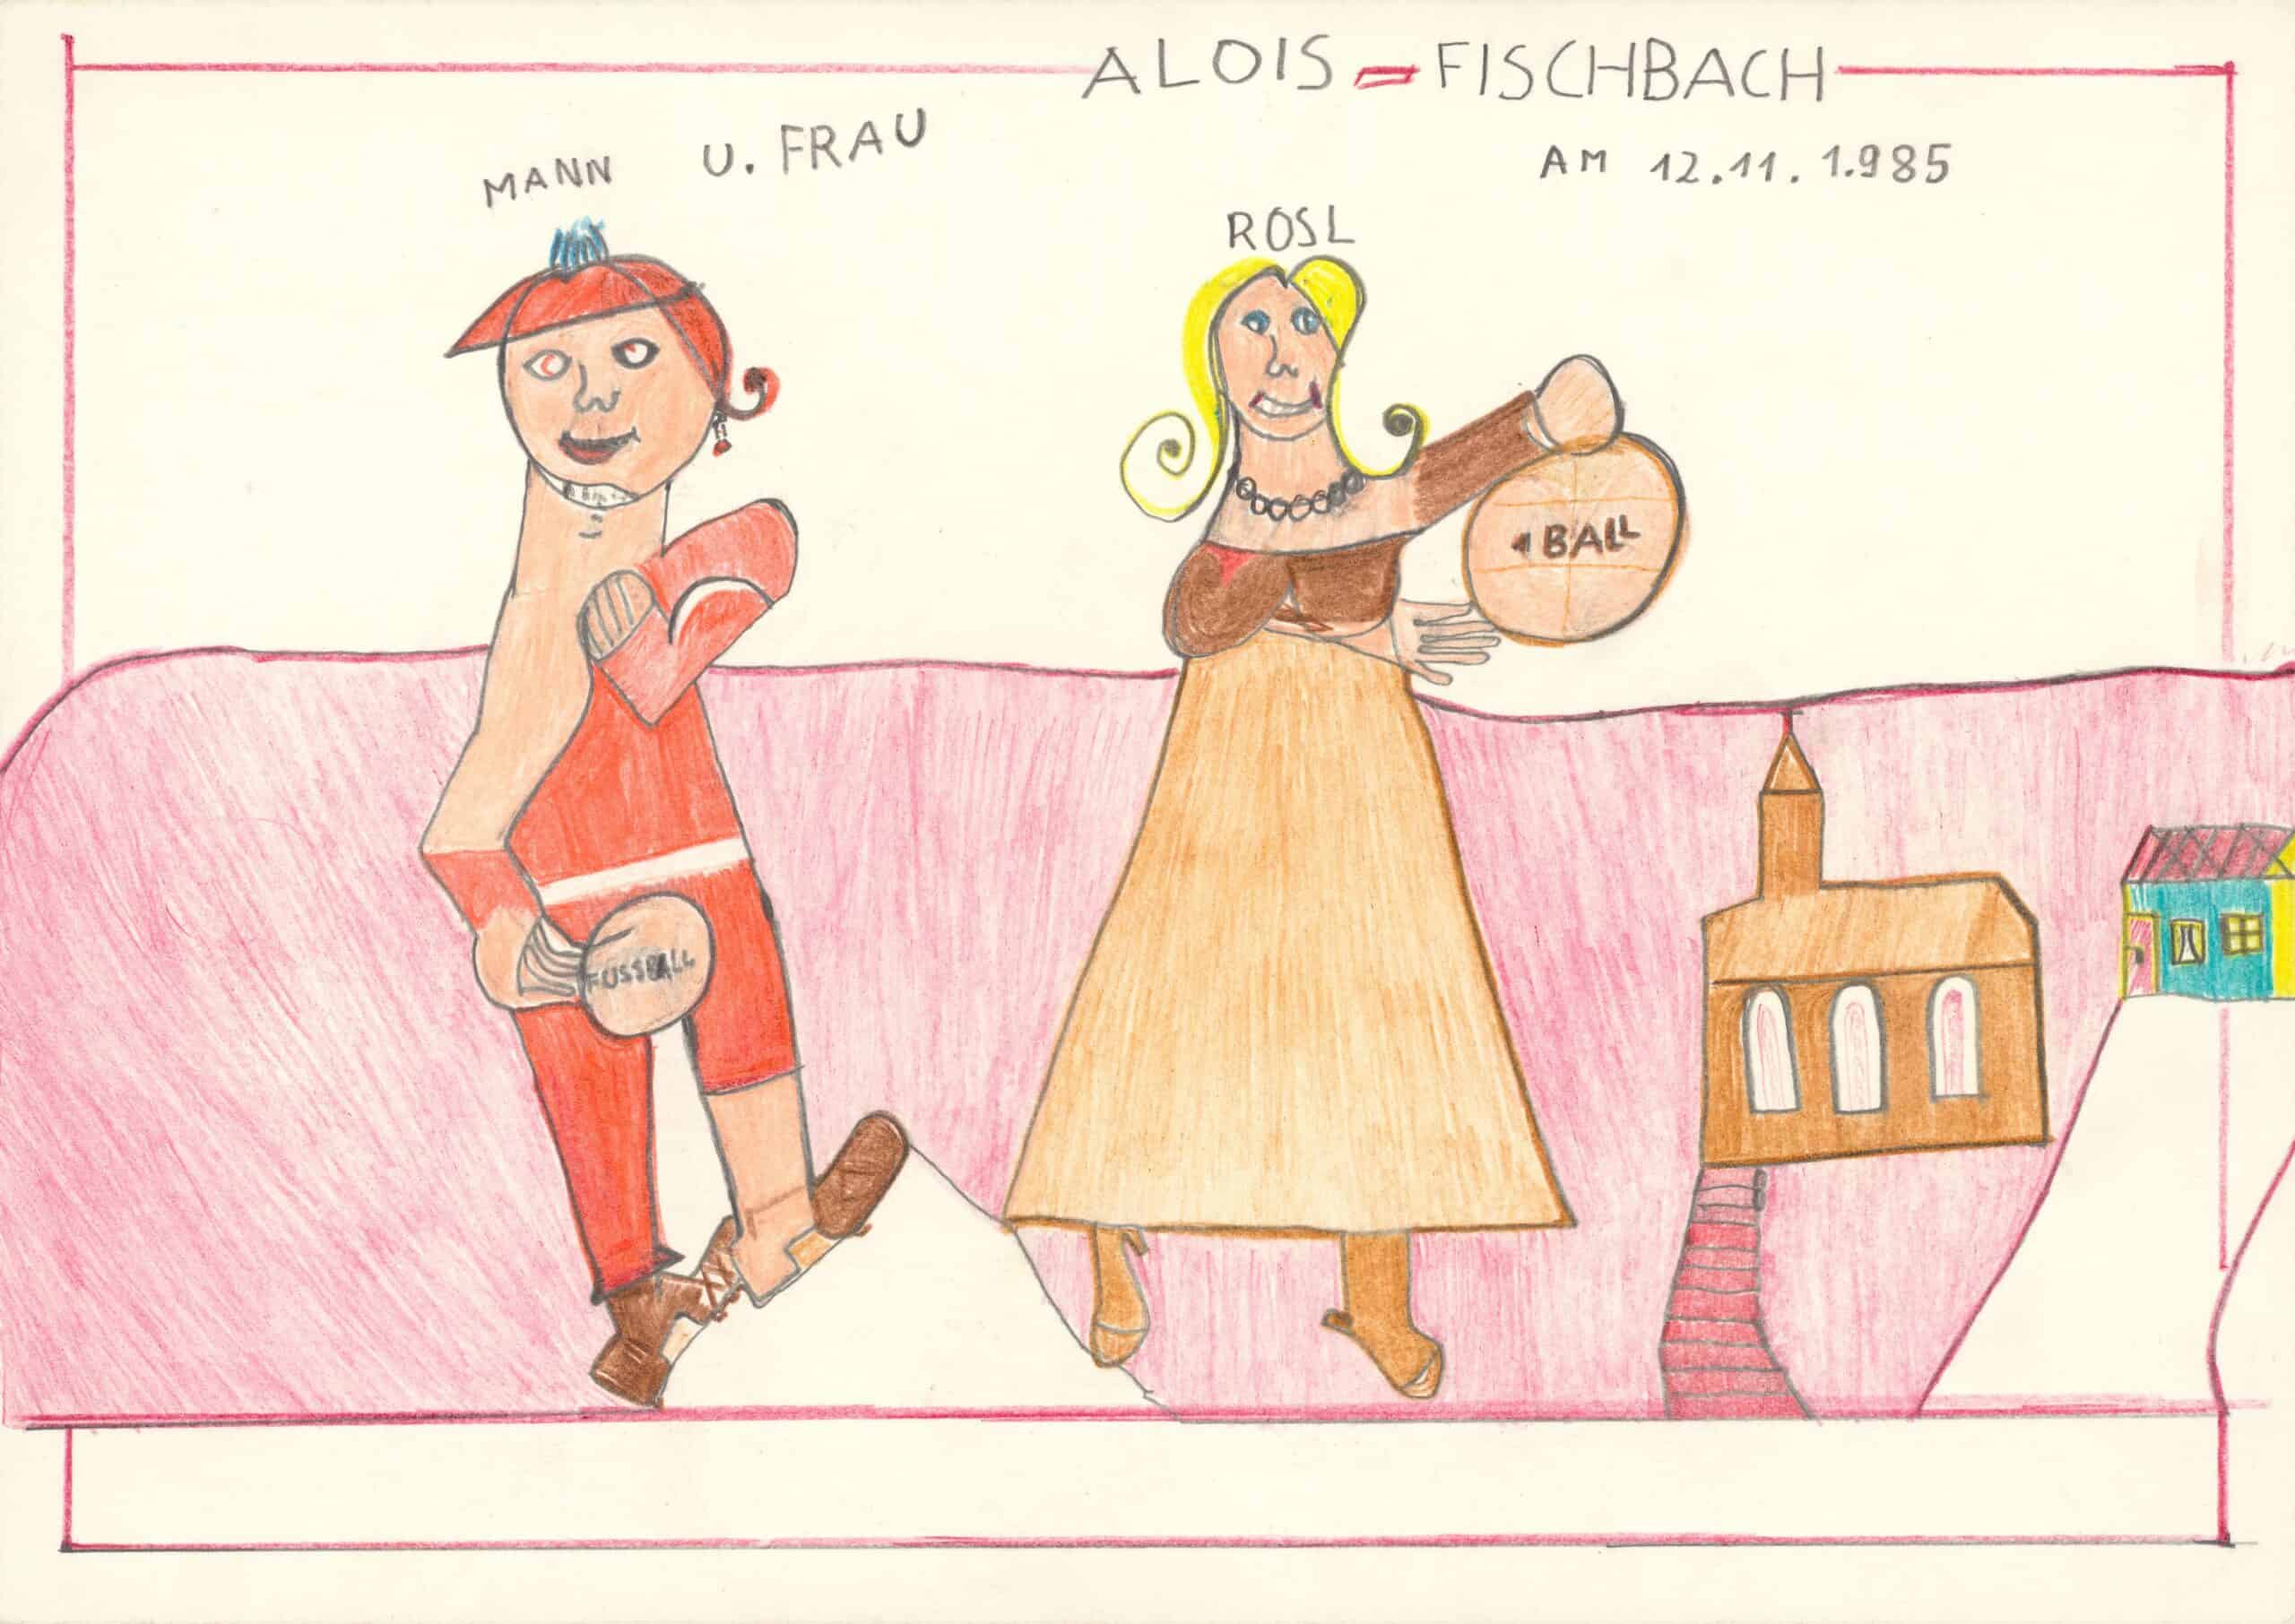 fischbach alois - Mann und Frau / Man and woman